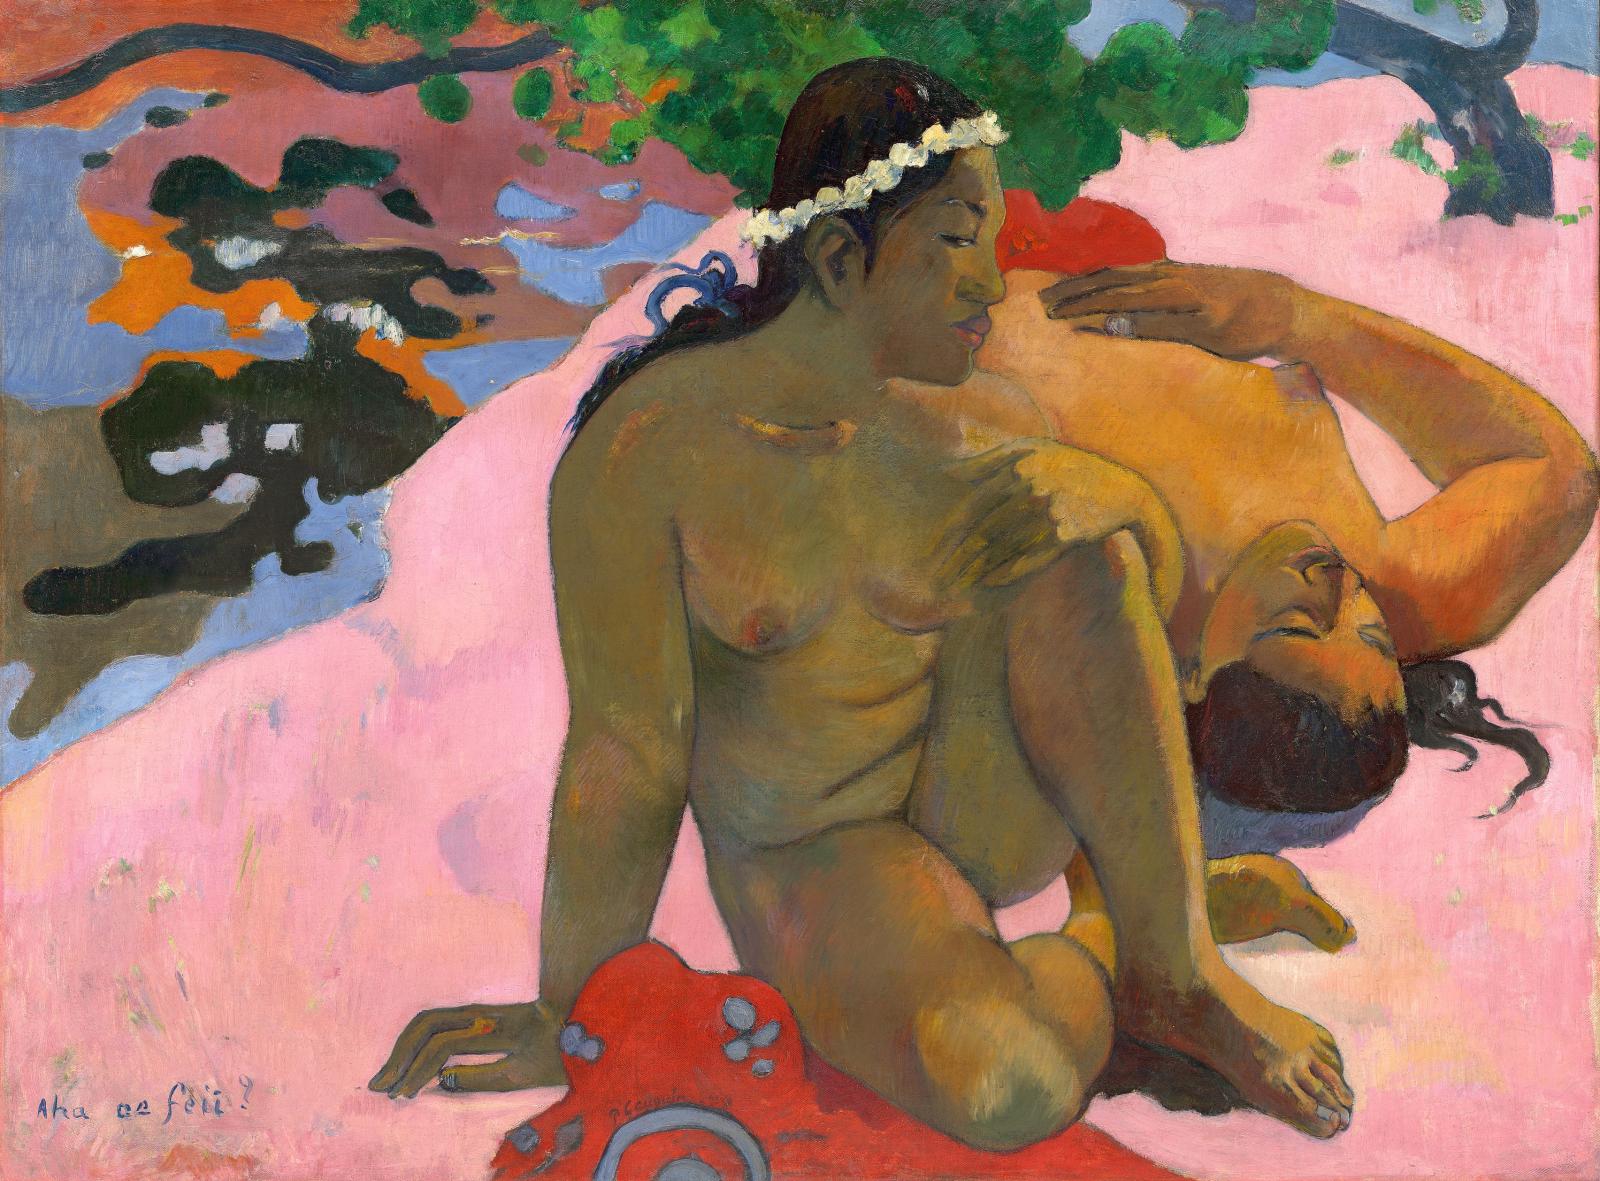 Paul Gauguin (1848-1903), Aha oé feii (Eh quoi, tu es jalouse), 1892, huile sur toile, 66 x 89 cm, musée d’État des beaux-arts Pouchkine, 